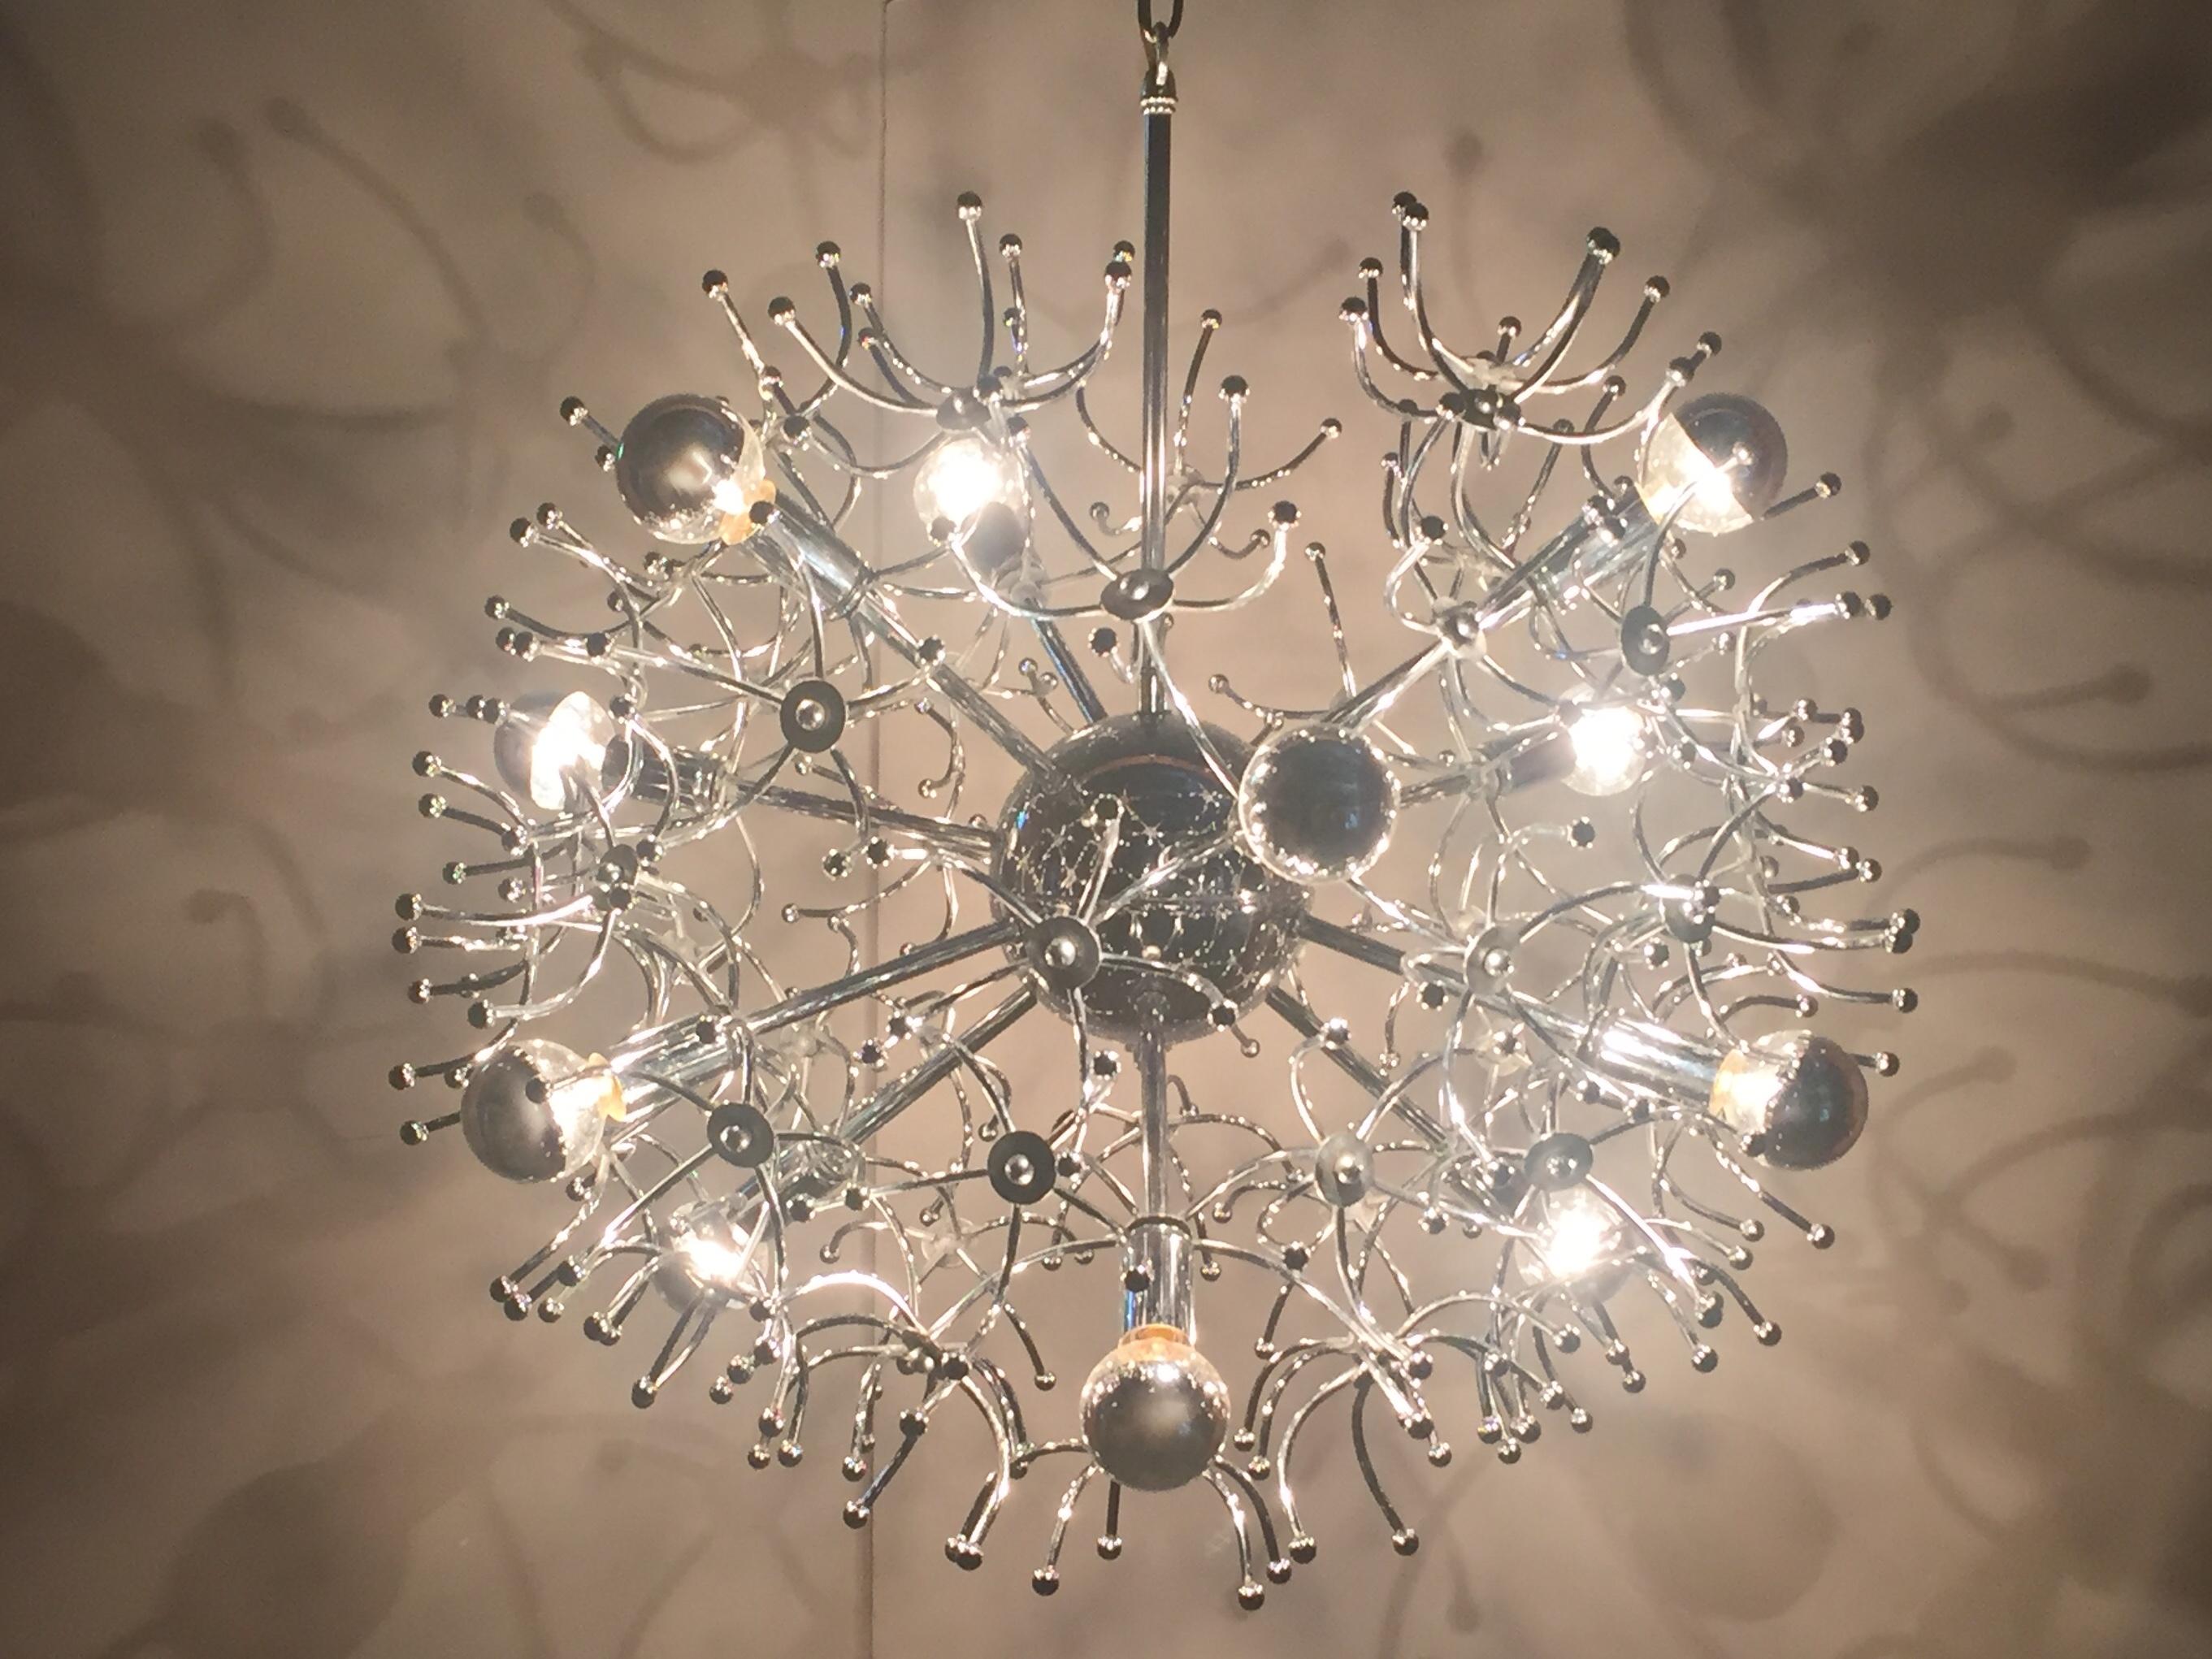 Ein runder, mehrarmiger Sputnik-Kronleuchter mit 12 Glühbirnen in glänzendem Chrom und Dutzenden von dekorativen Ranken, die diese Vintage-Leuchte wie eine erstaunliche Unterwasserkreatur aussehen lassen.
Der Abstand von der Unterseite der Leuchte